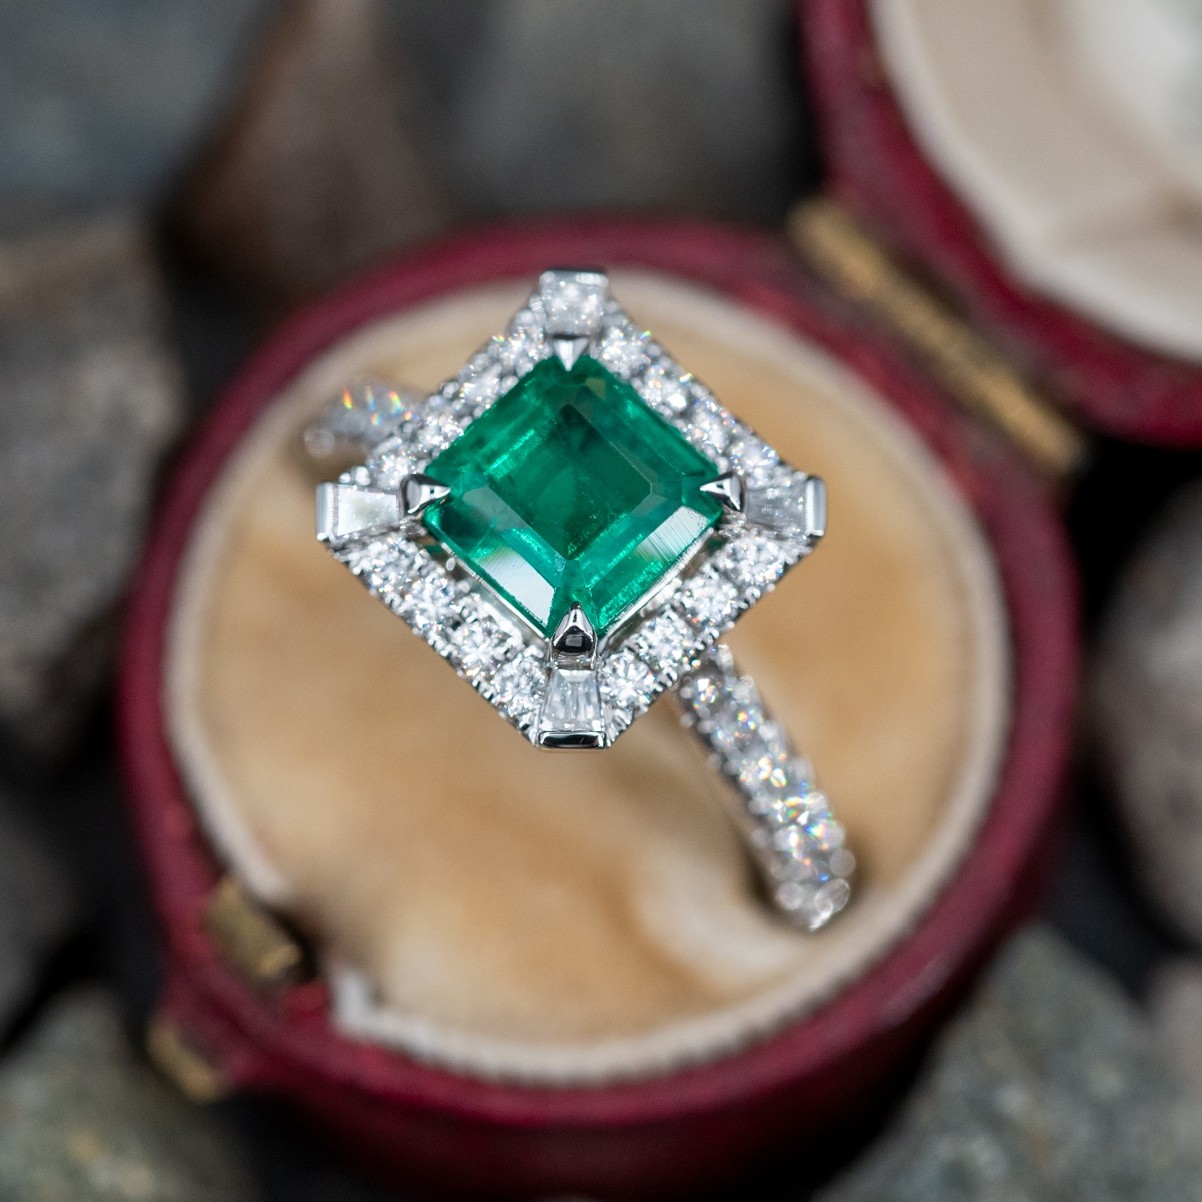 Square Emerald Ring w/ Diamond Accents 18K White Gold